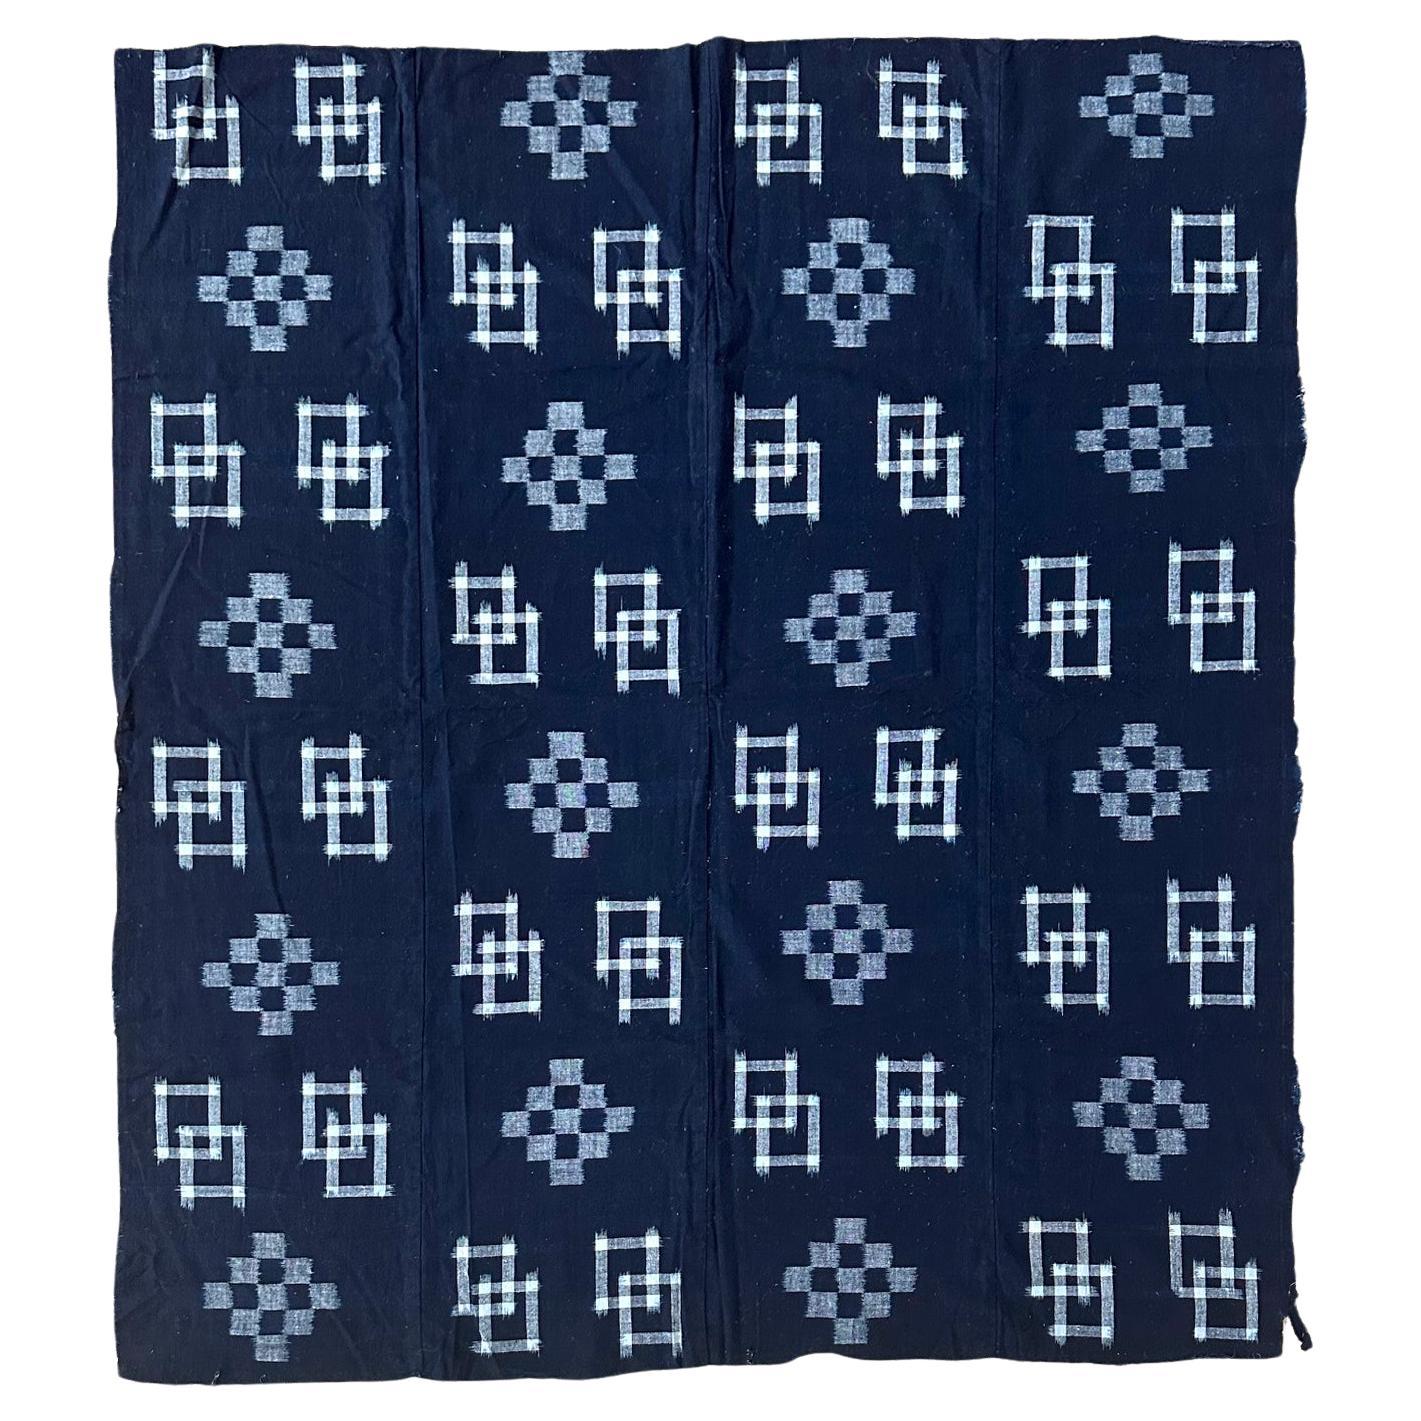 Doppelter Ikat Kasuri Futon-Teppich mit japanischem Textilverkleidung